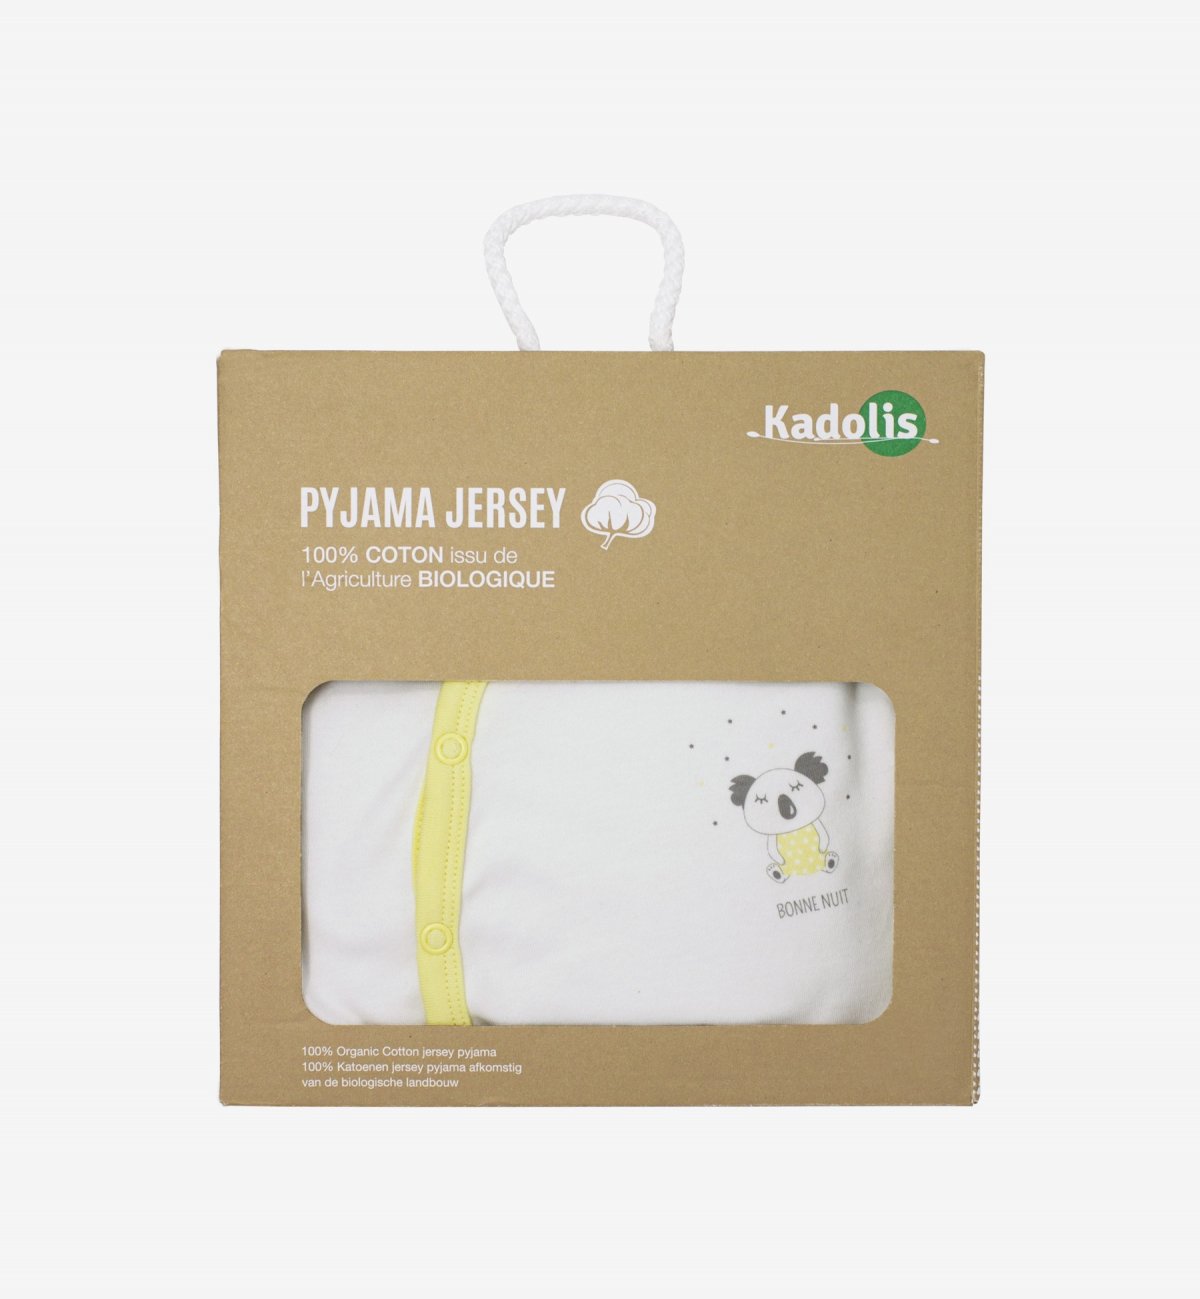 Zomerse babypyjama in biokatoenen jersey met Koala Kadolis-patronen.